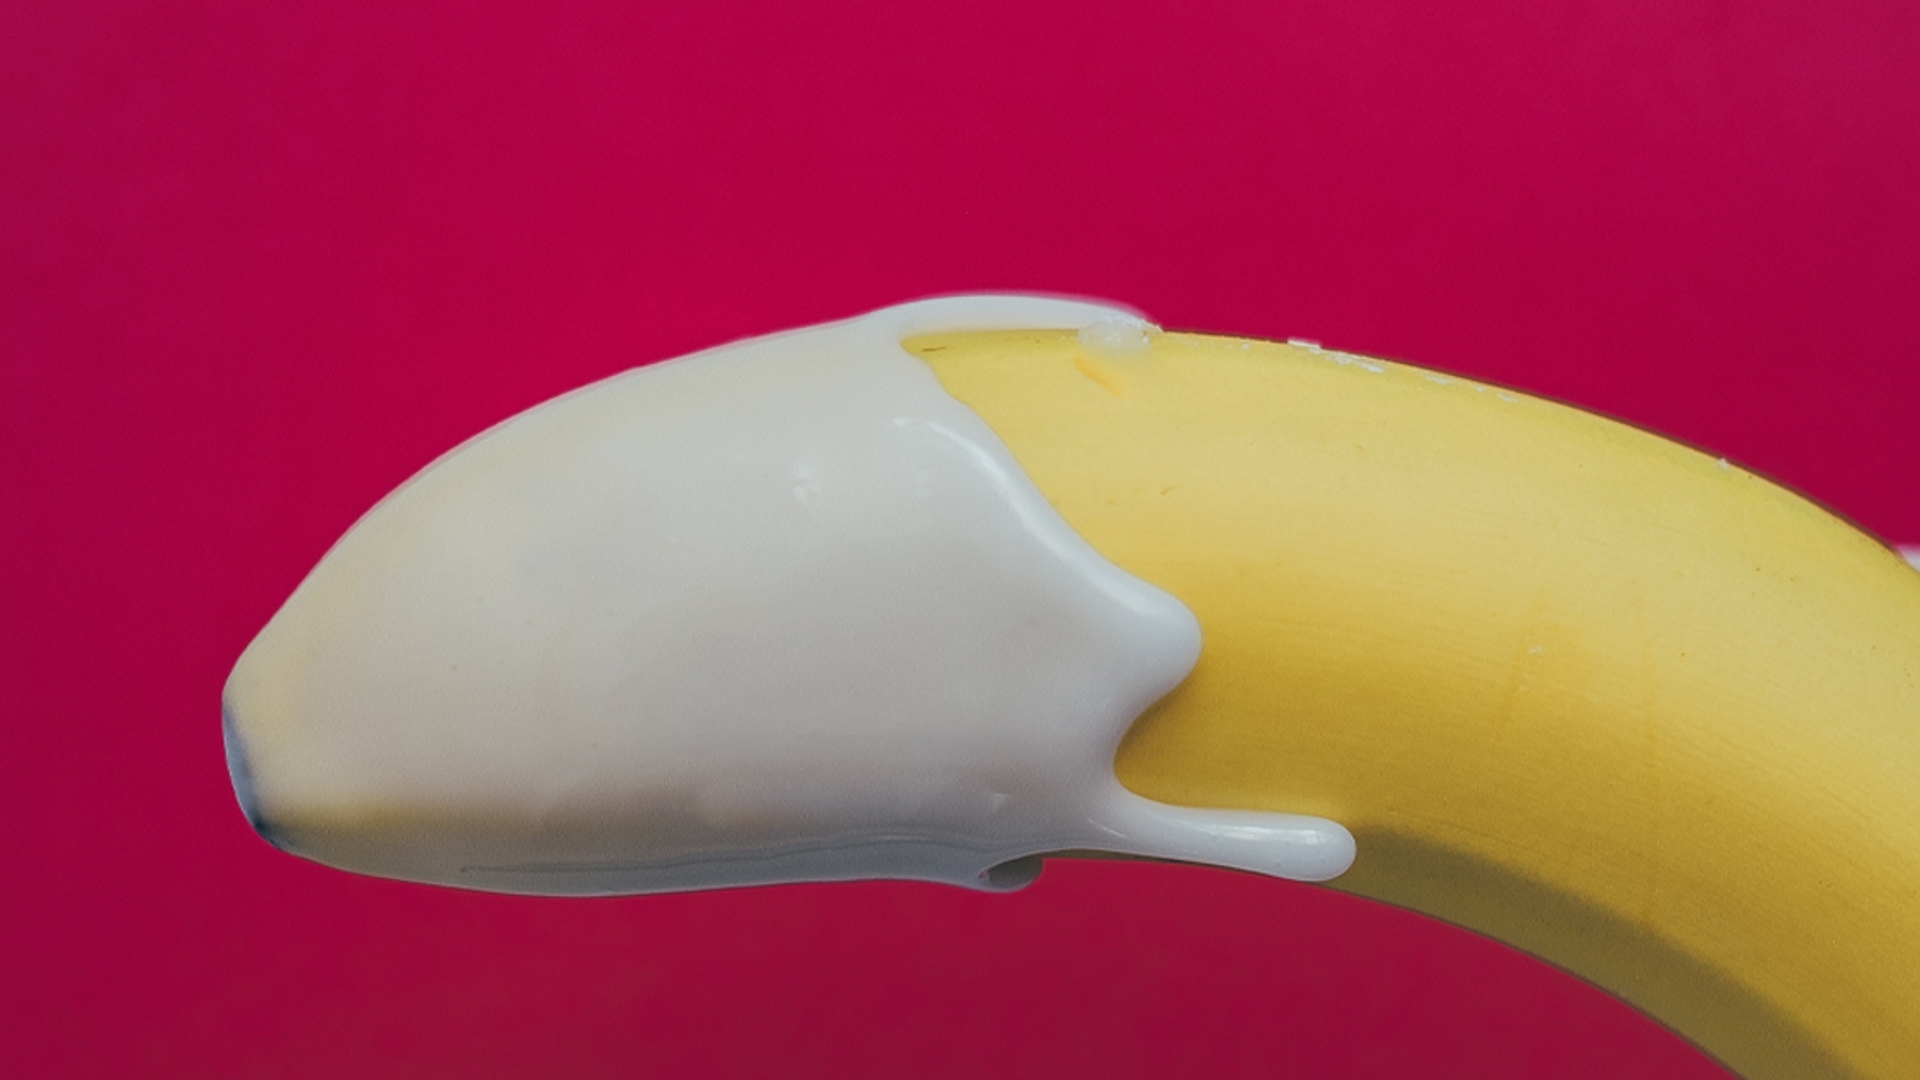 kromme penis in banaanvorm